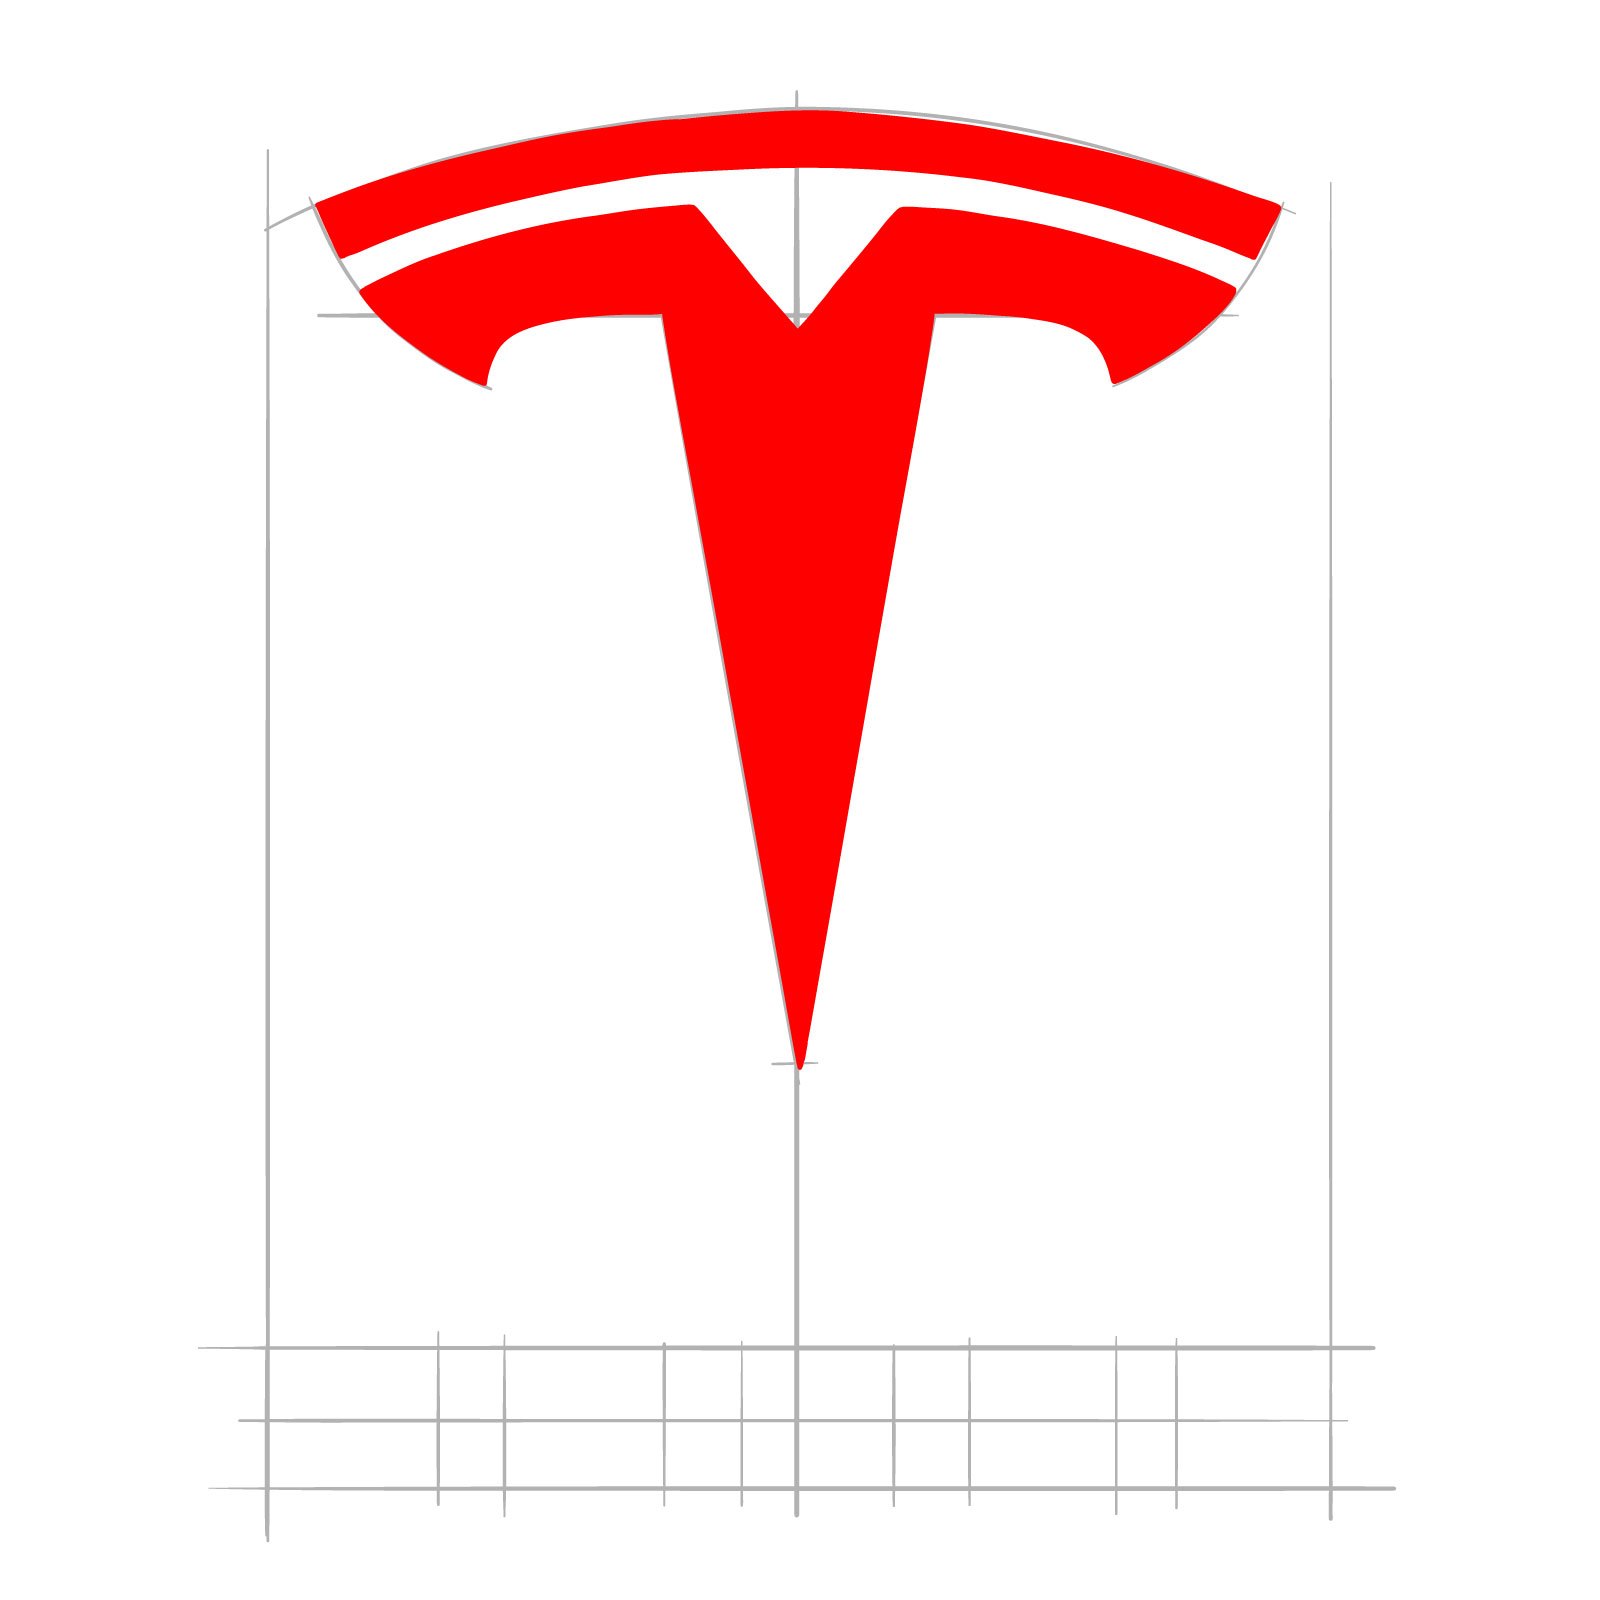 How to draw the Tesla logo - step 07